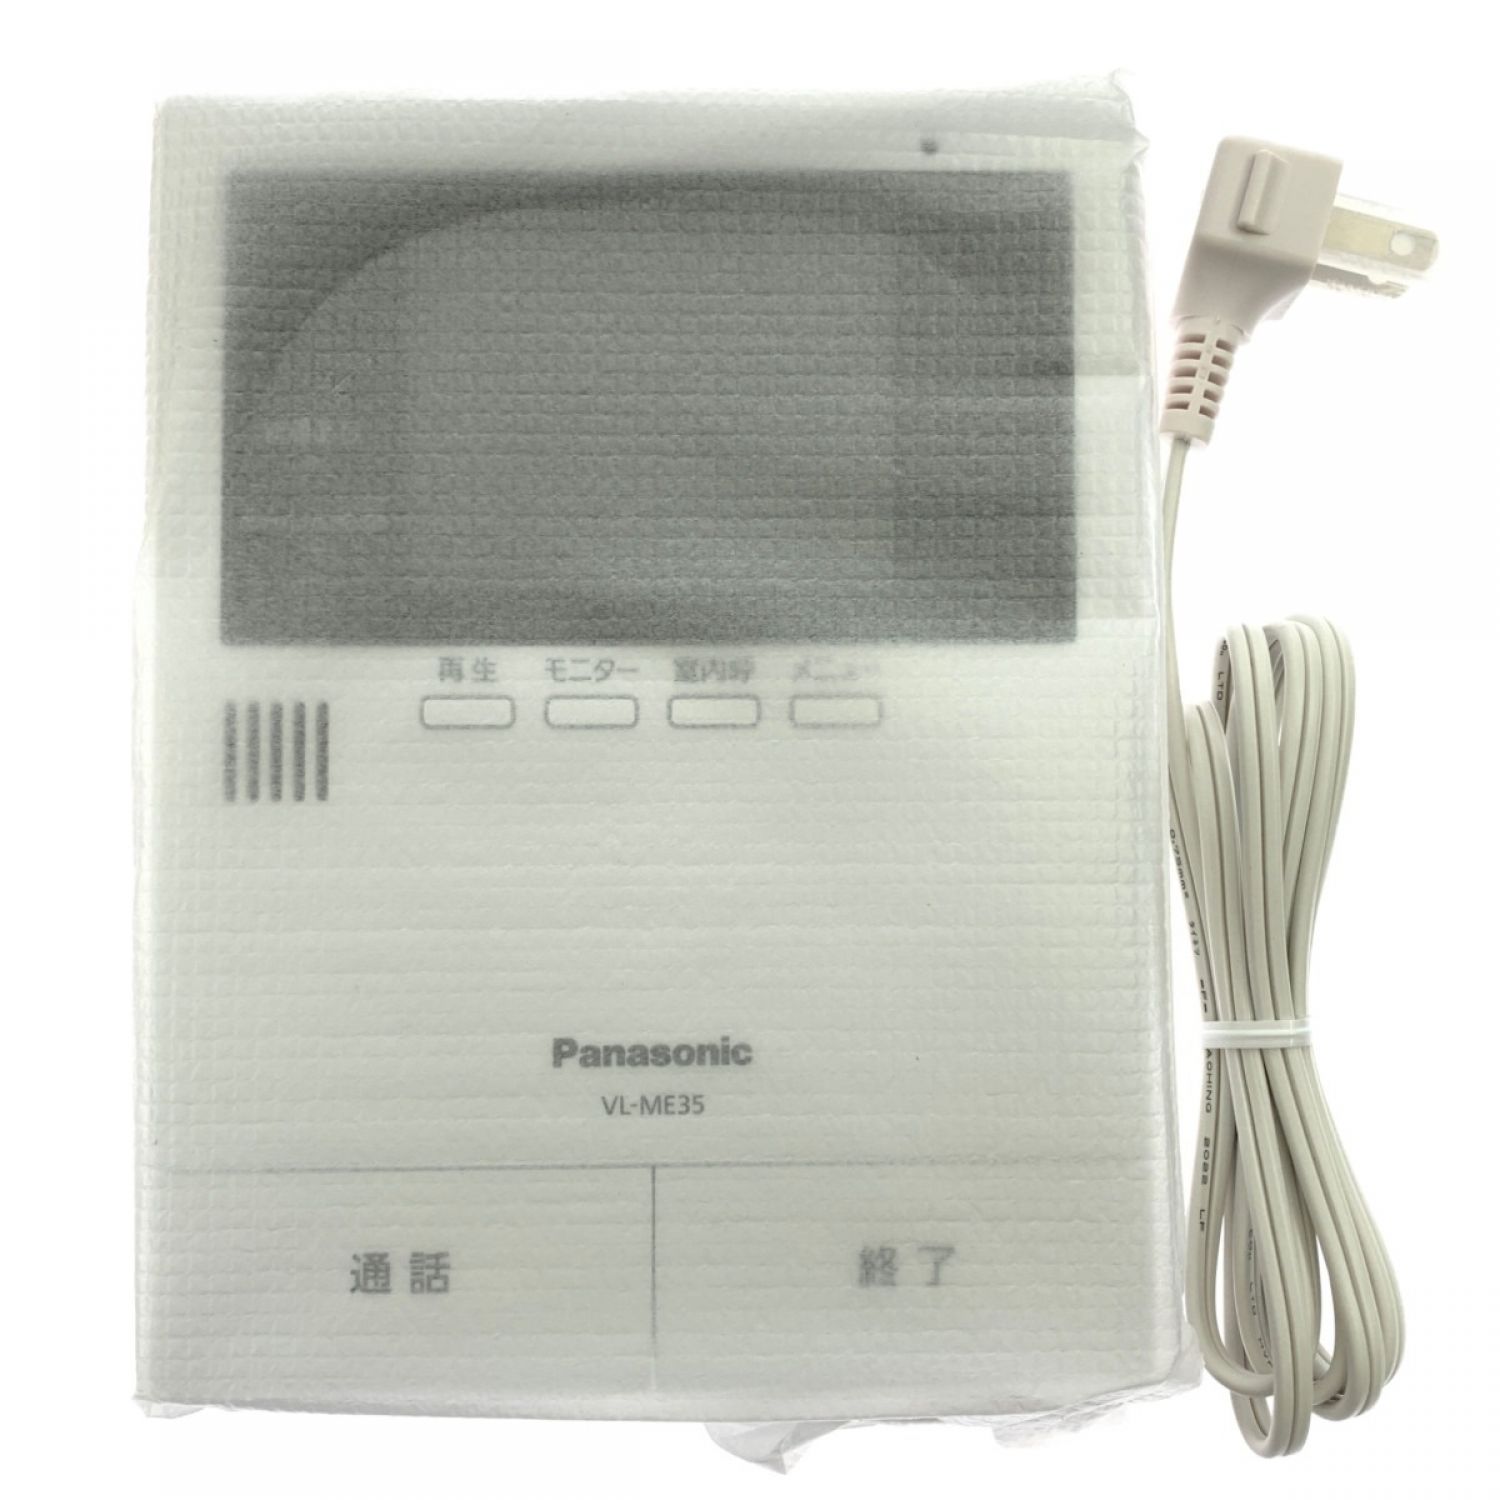 Panasonic パナソニック テレビドアホン 電源コード式 VL-SE35KF 開封未使用品 Sランク